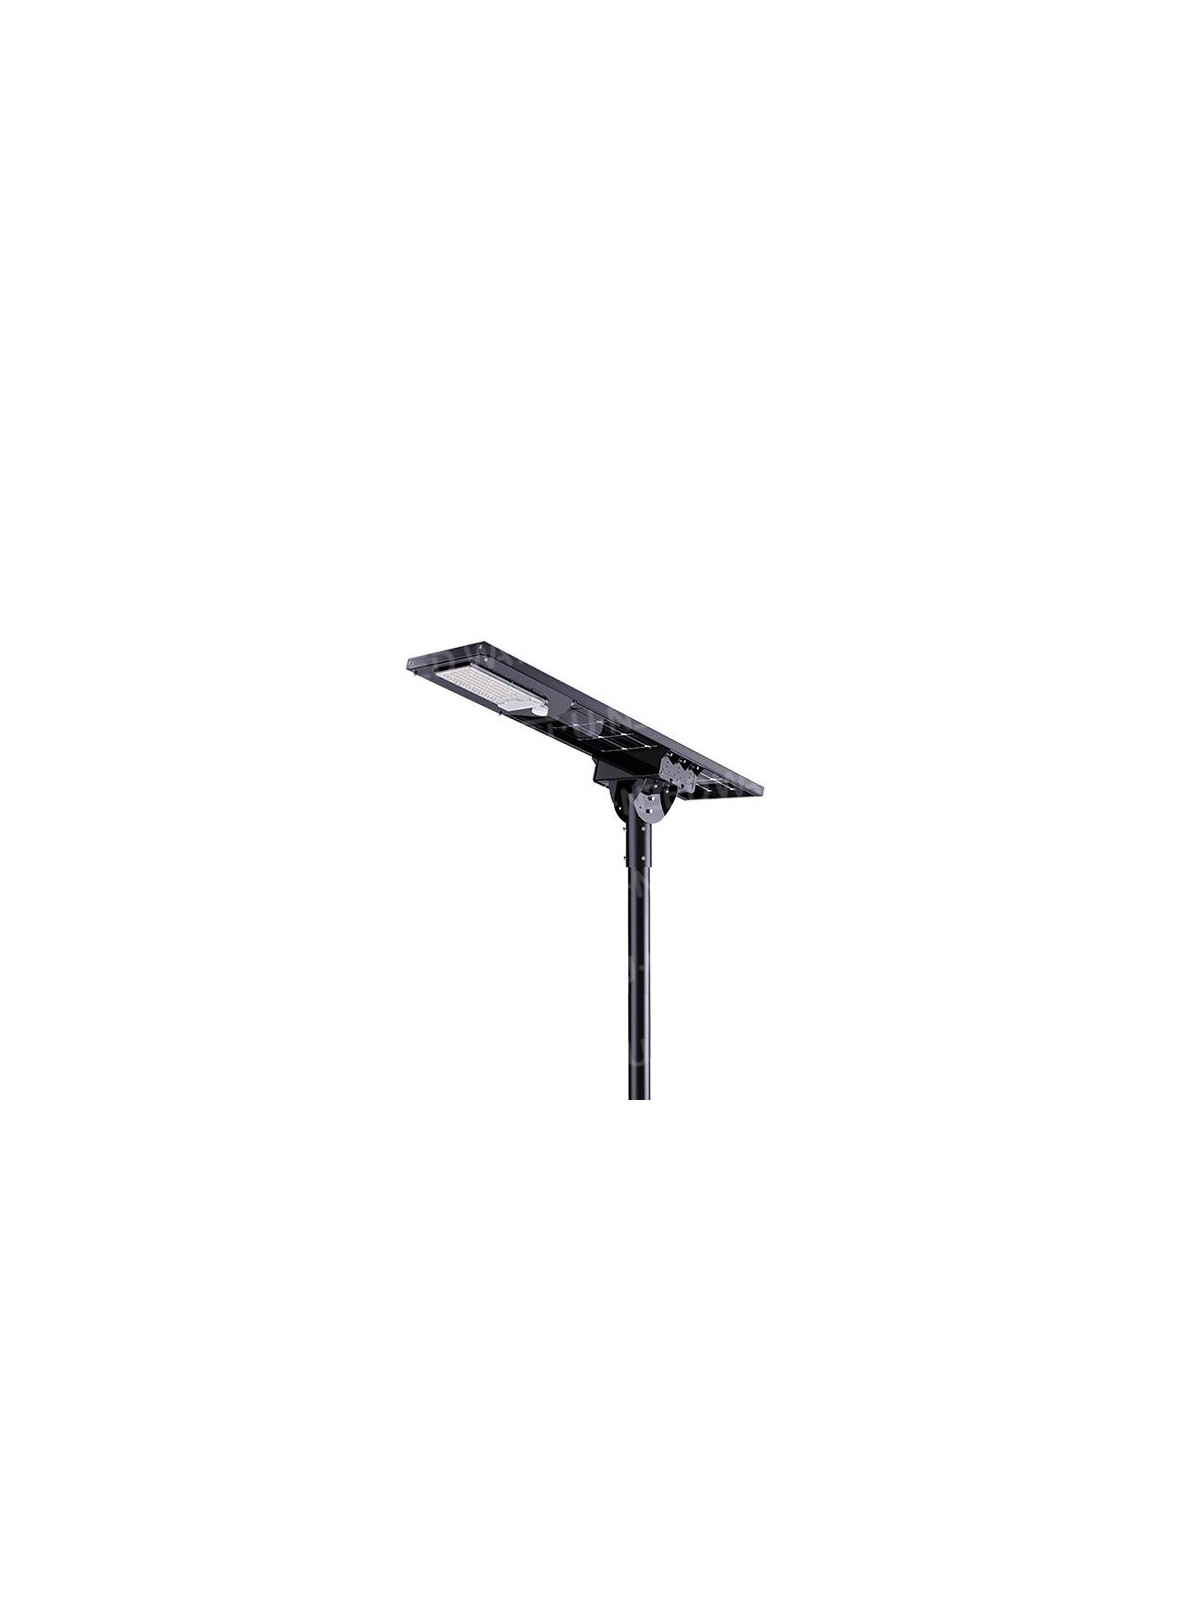 Lampadaire solaire - LED autonome ShootingStarIII